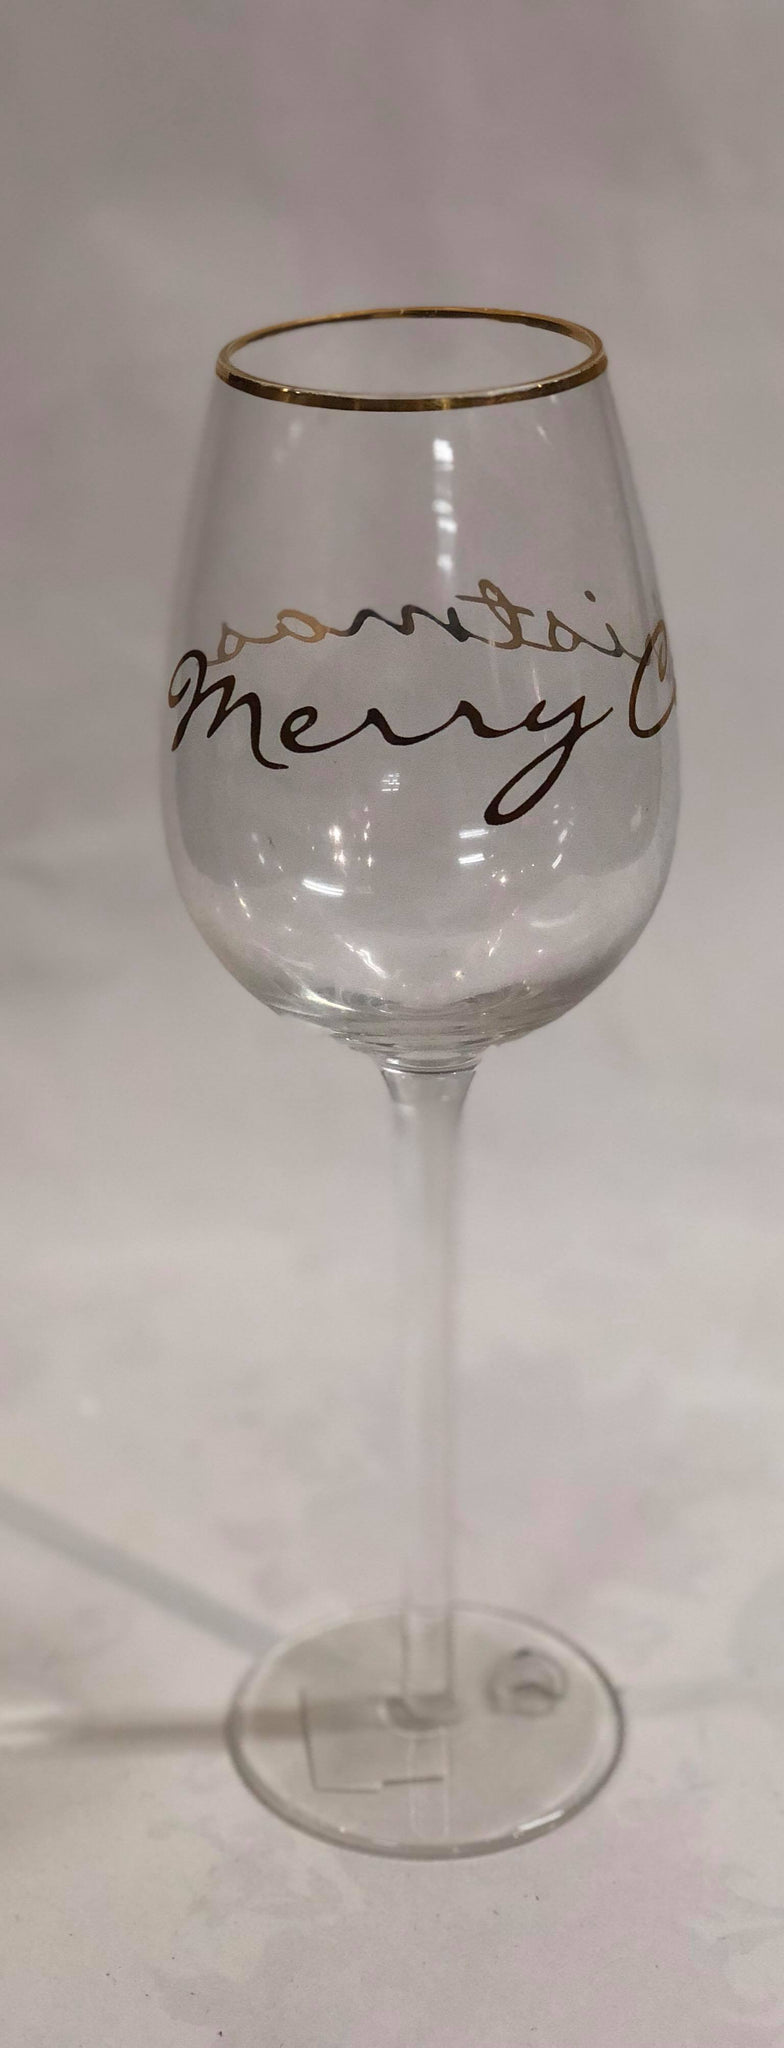 Christmas wine glass "Merry Christmas"